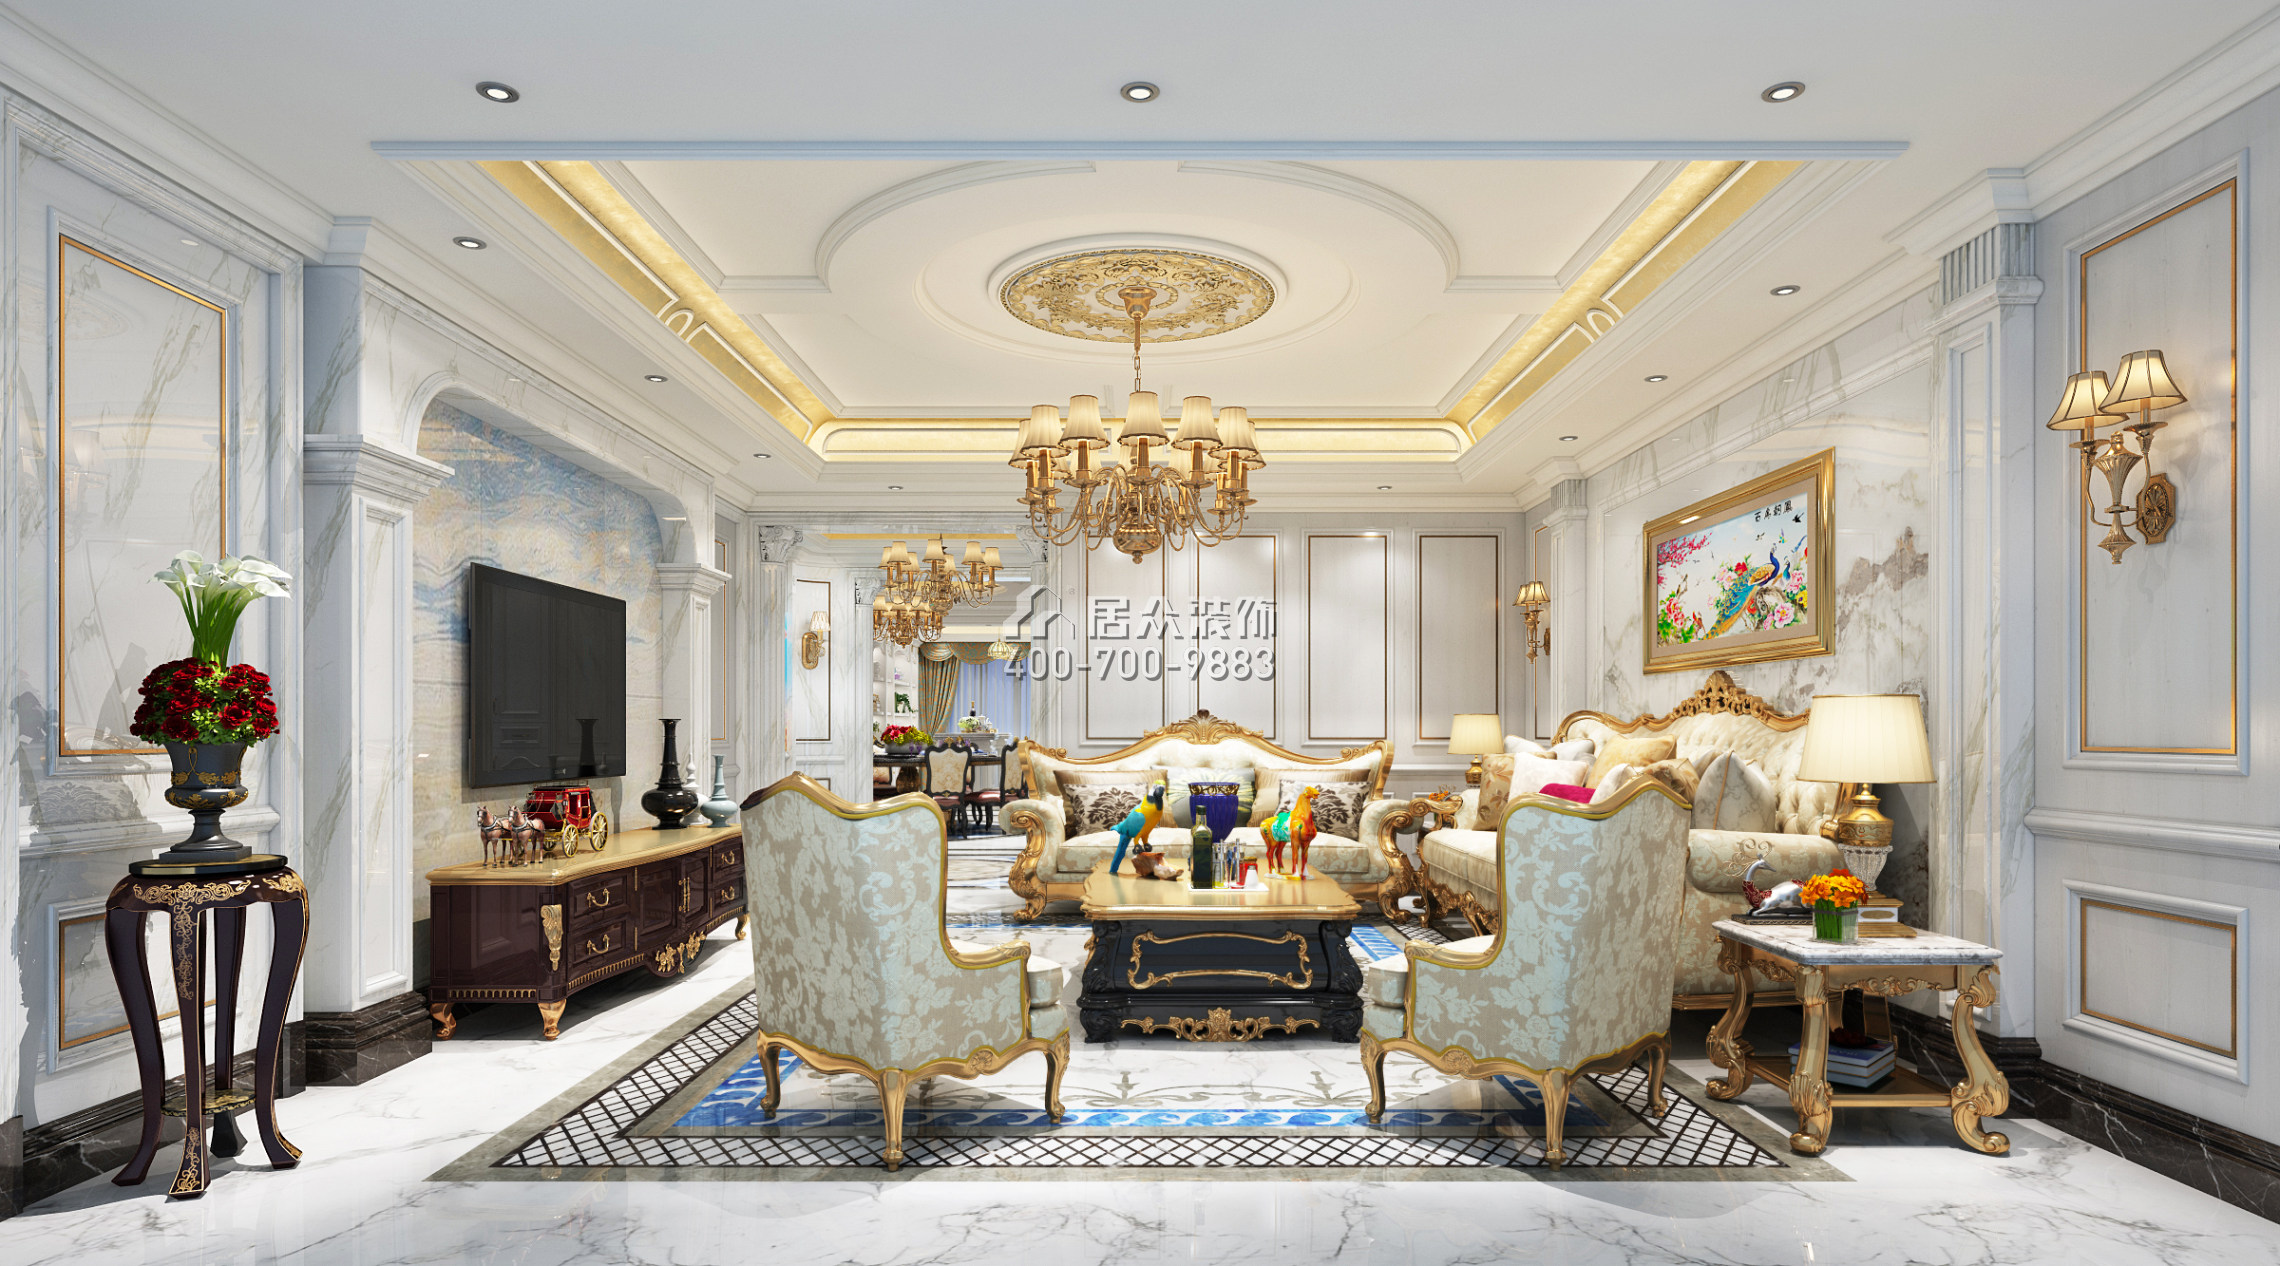 中洲中央公园二期289平方米欧式风格平层户型客厅装修效果图